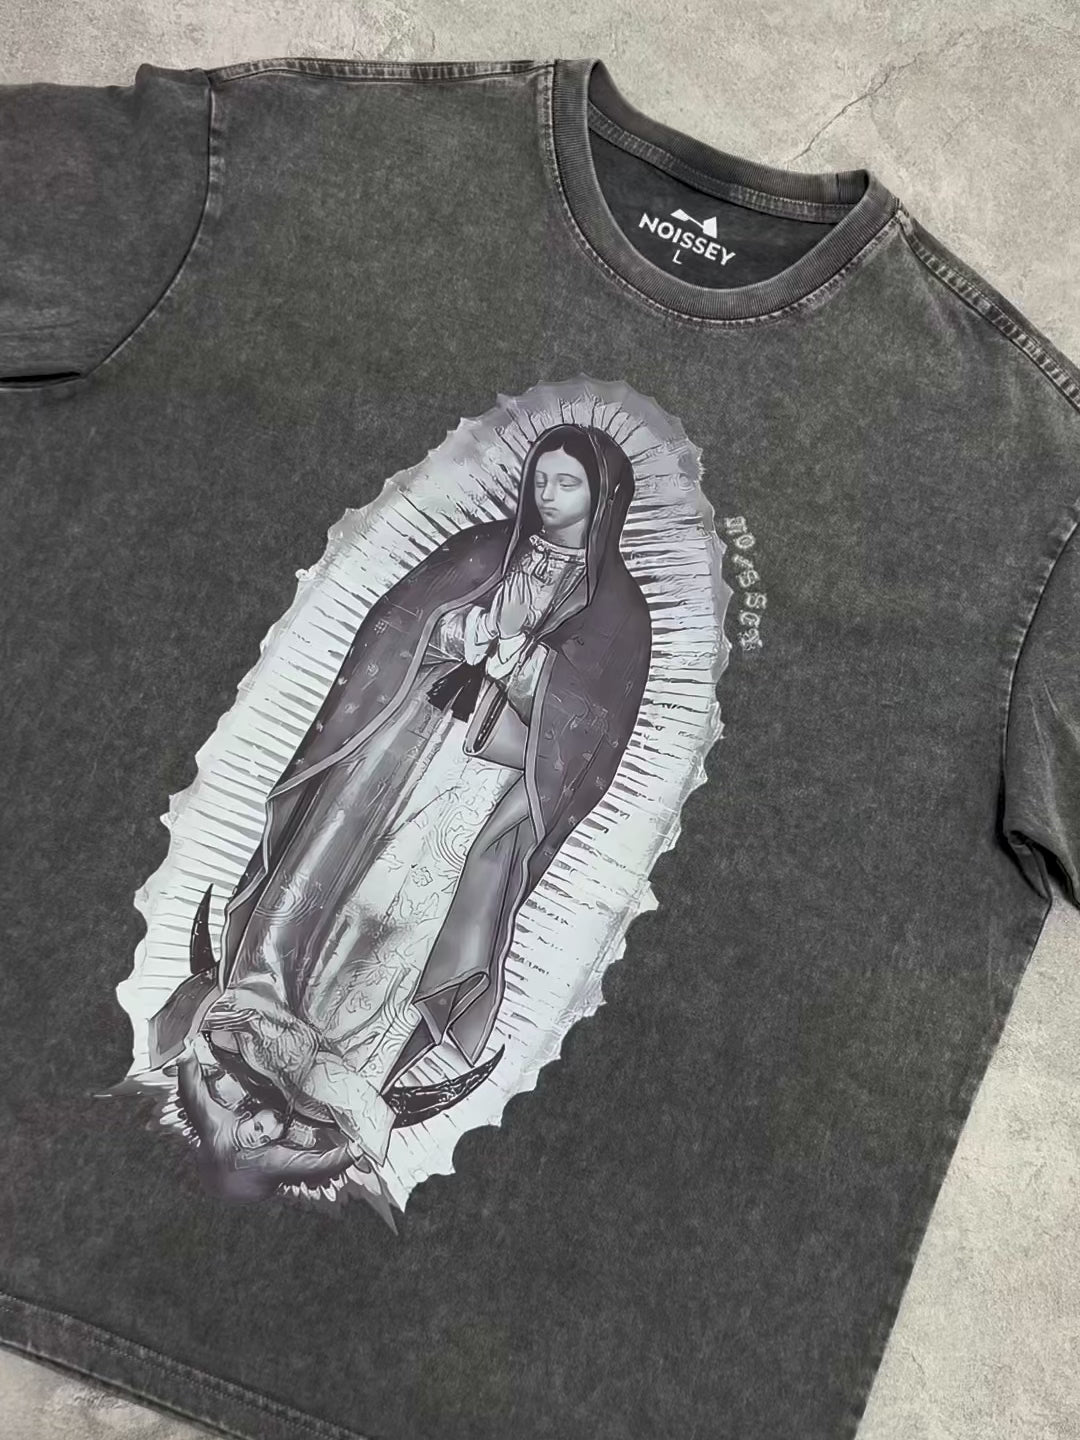 障害物と危険©グアダルーペの聖母 グレー T シャツ